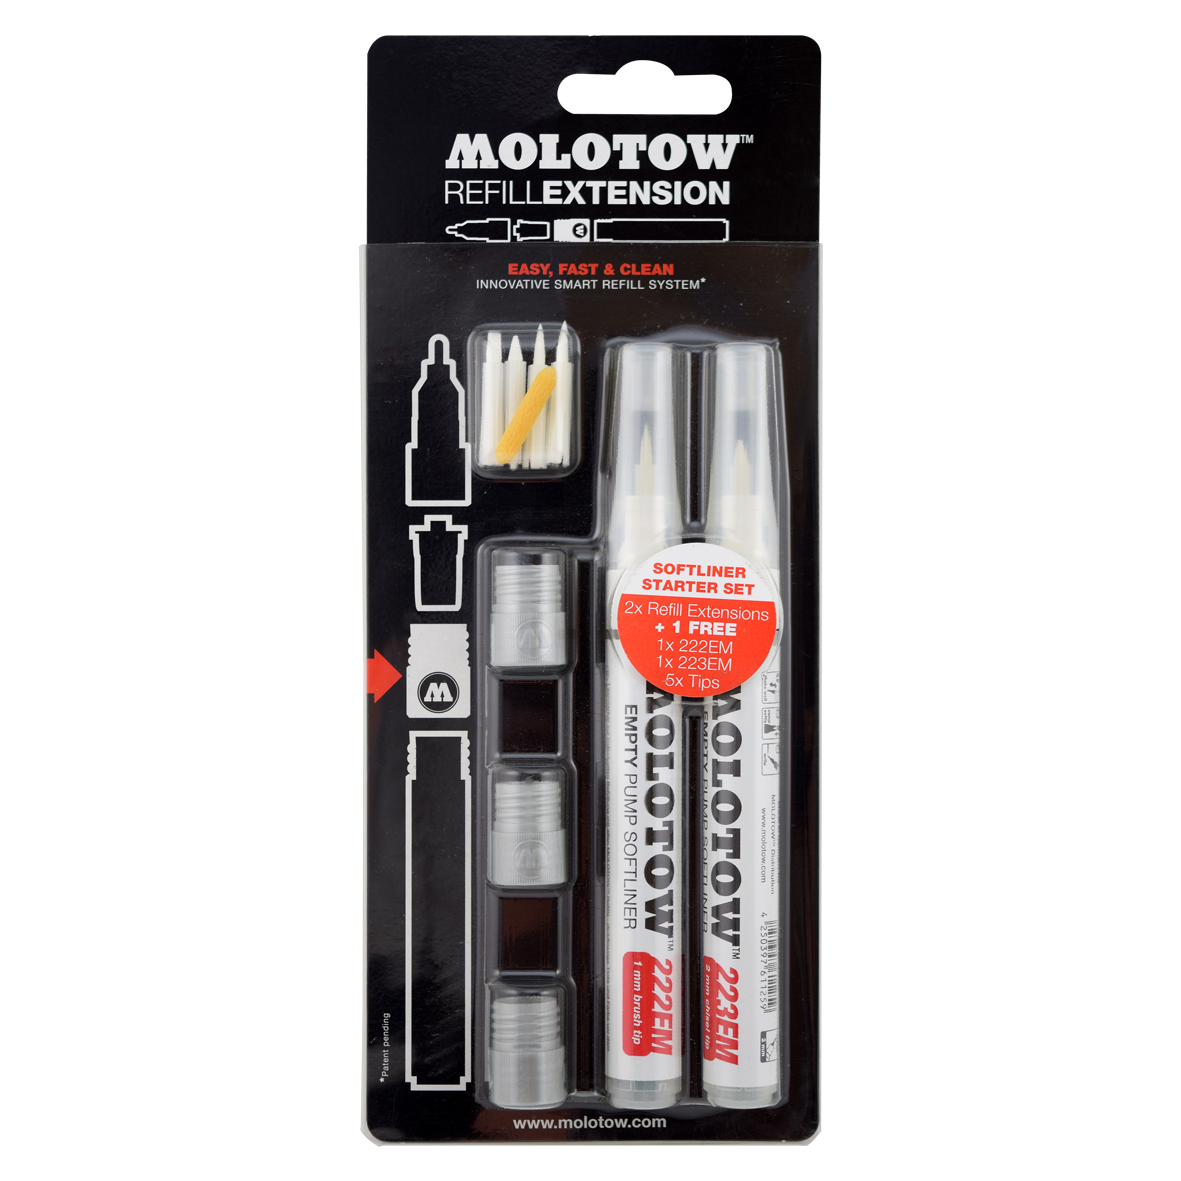 MOLOTOW -Blister surtido refill extensión softliner 222em-223em no. 505